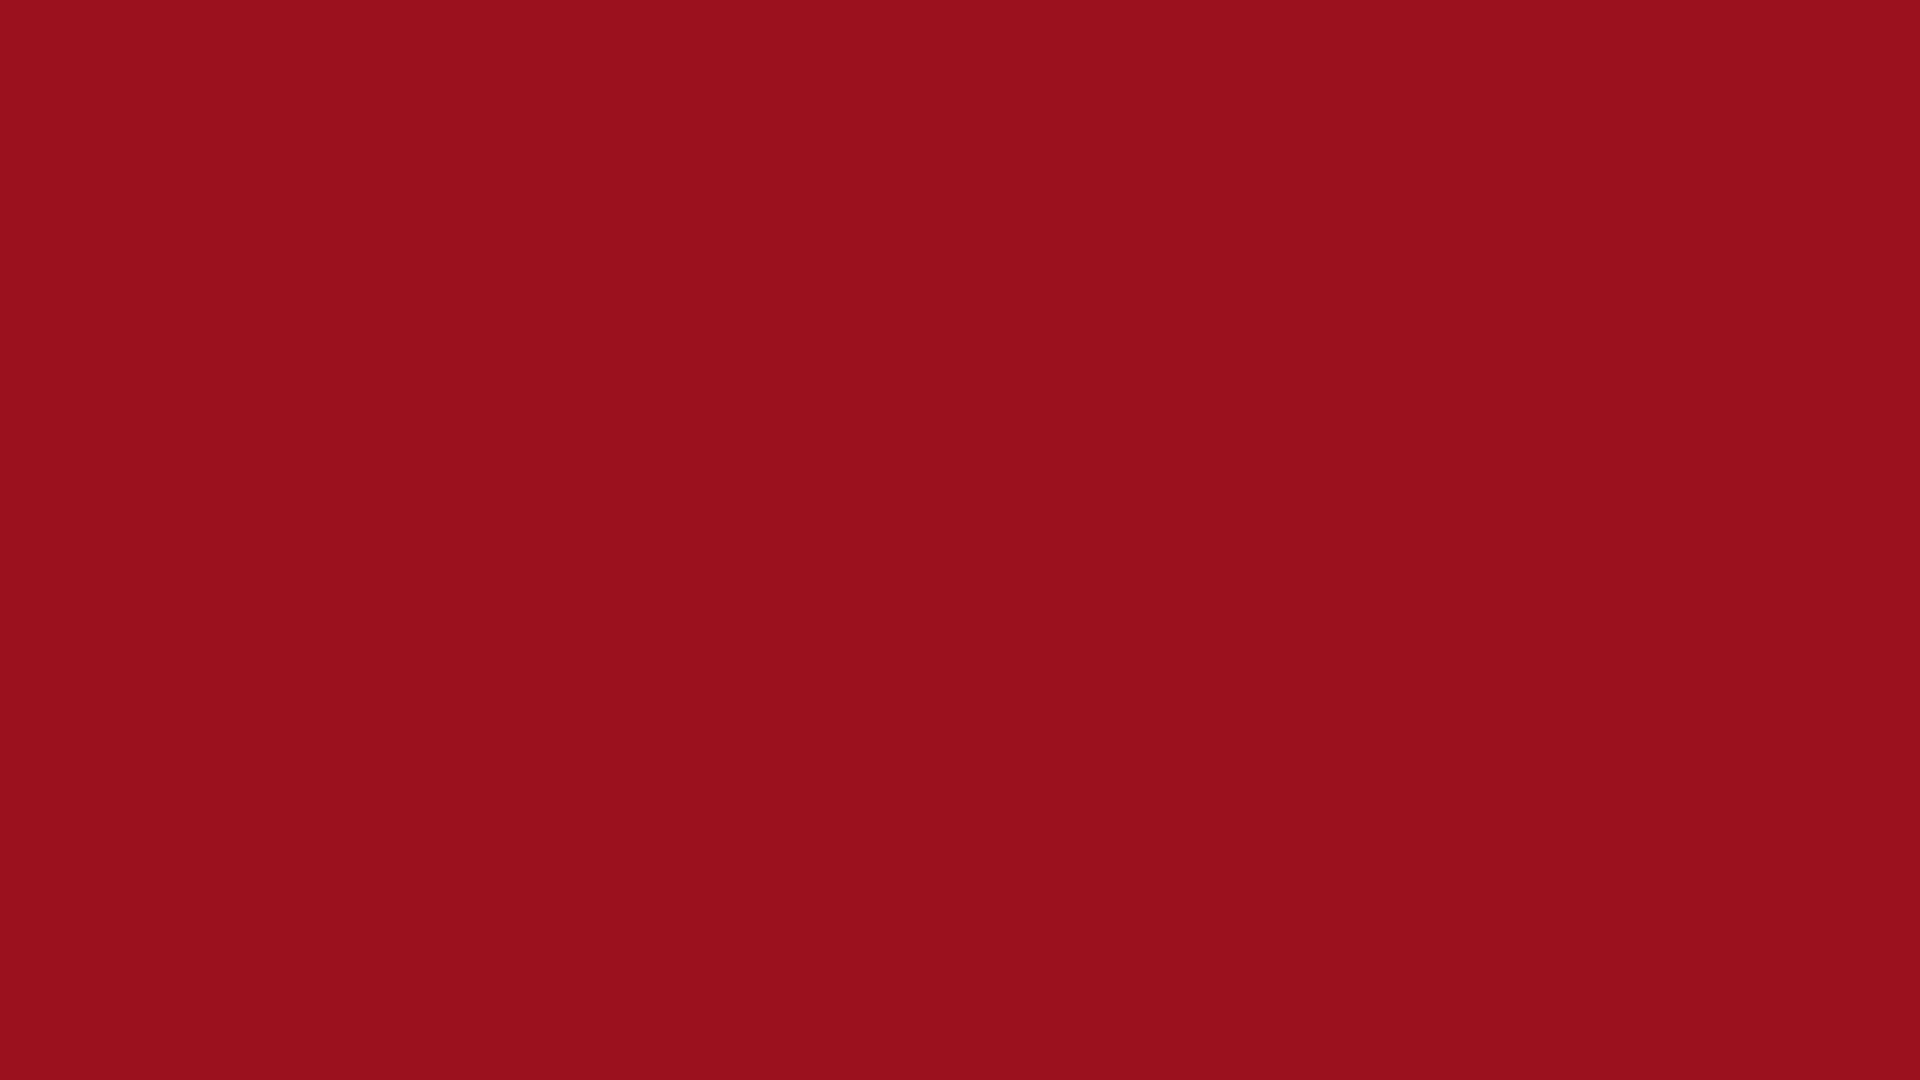 Màu đỏ đậm phủ toàn bộ (Solid color background in ruby red): Đỏ là màu sắc đại diện cho sự nhiệt huyết, năng động và sự bứt phá. Hình nền màu đỏ đậm phủ toàn bộ sẽ giúp bạn tạo nên không gian cực kỳ bắt mắt và độc đáo trên màn hình máy tính của mình. Hãy tưởng tượng trông nó sẽ ra sao trên màn hình của bạn!